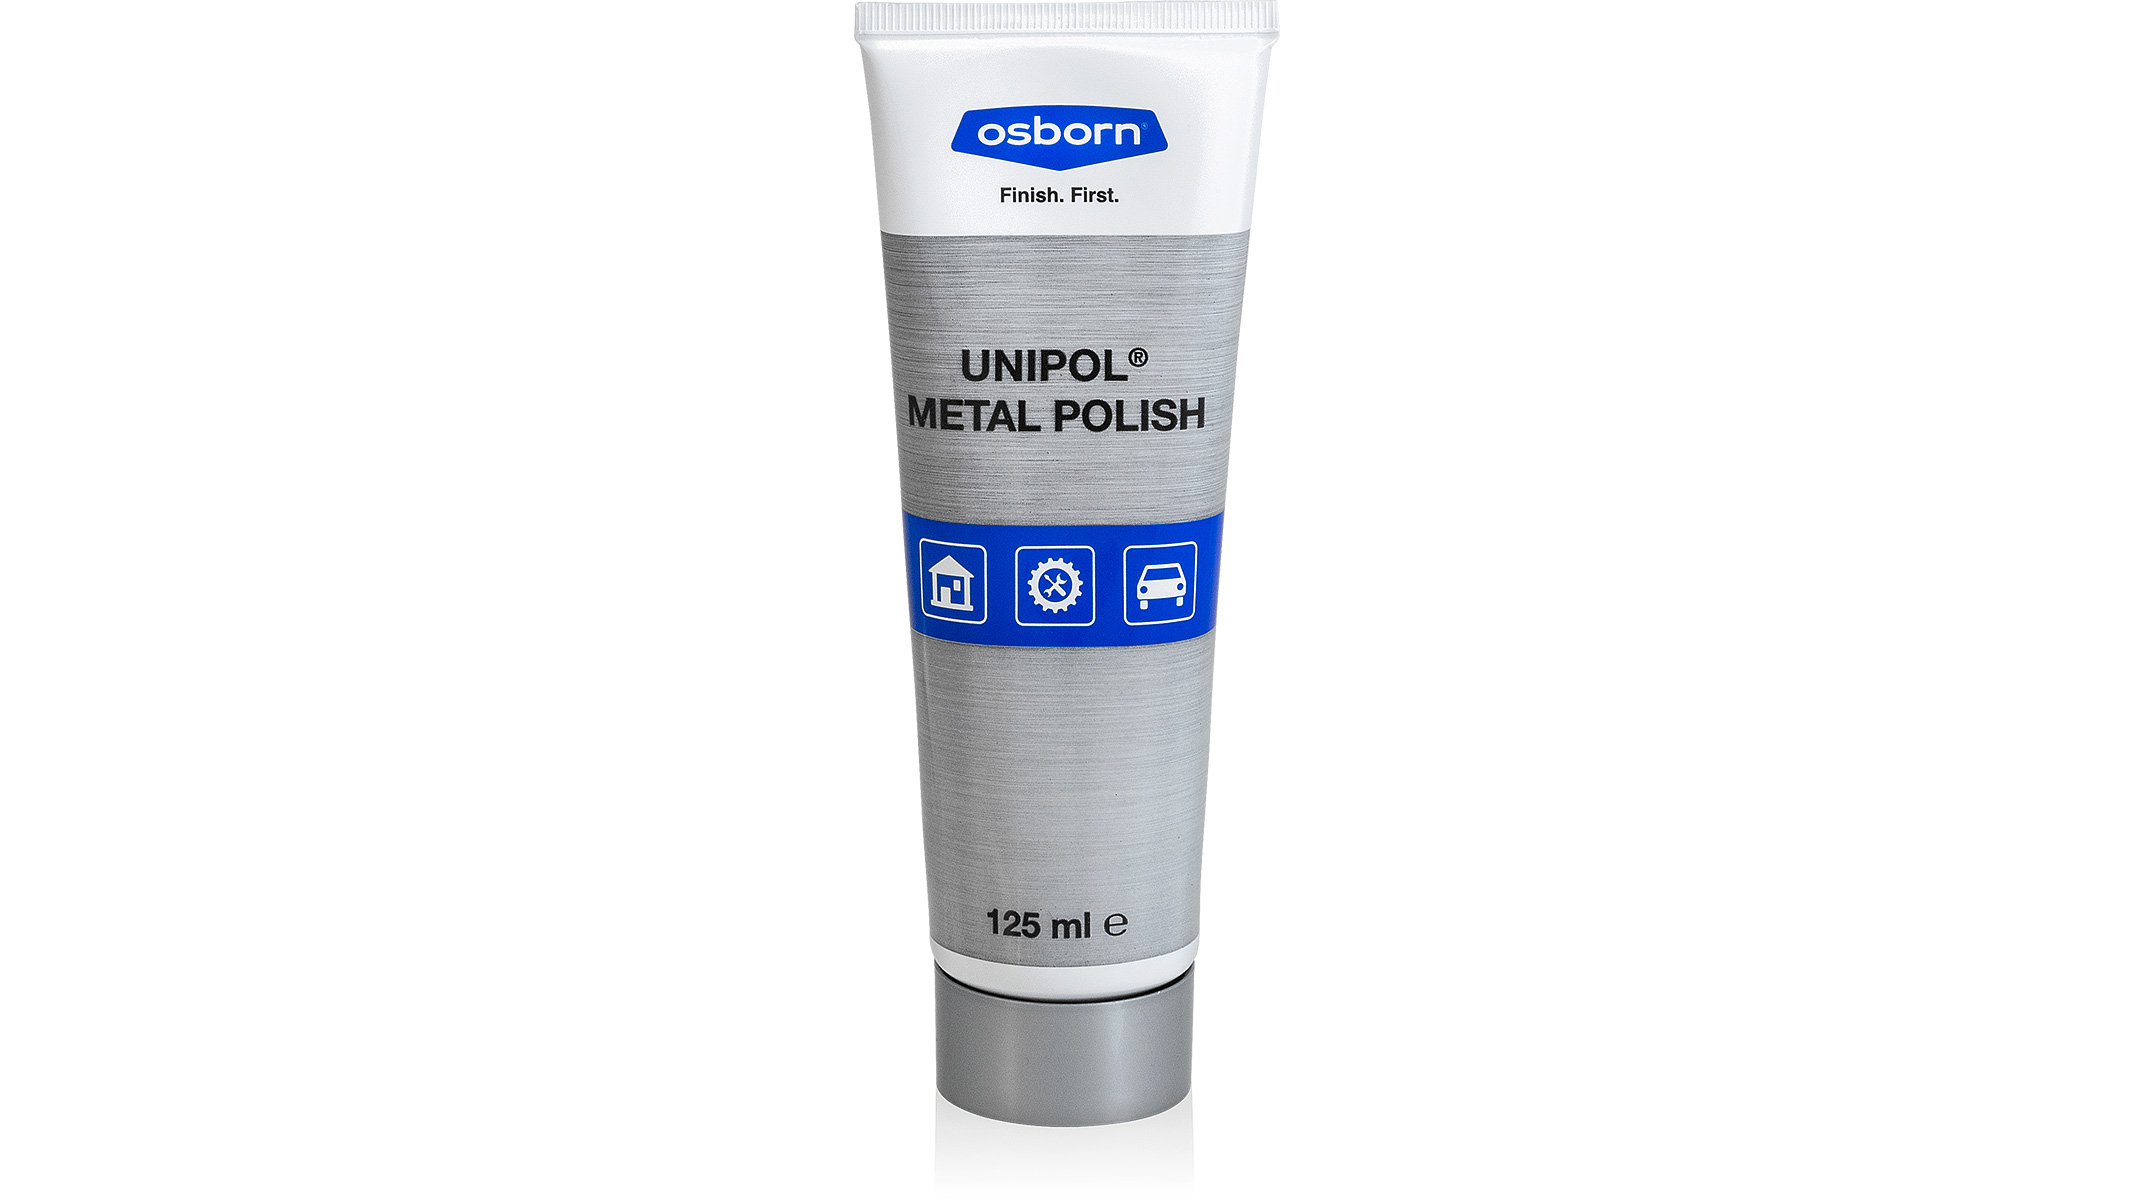 Unipol Metal Polish, pâte de polissage pour métaux, tube 125 ml